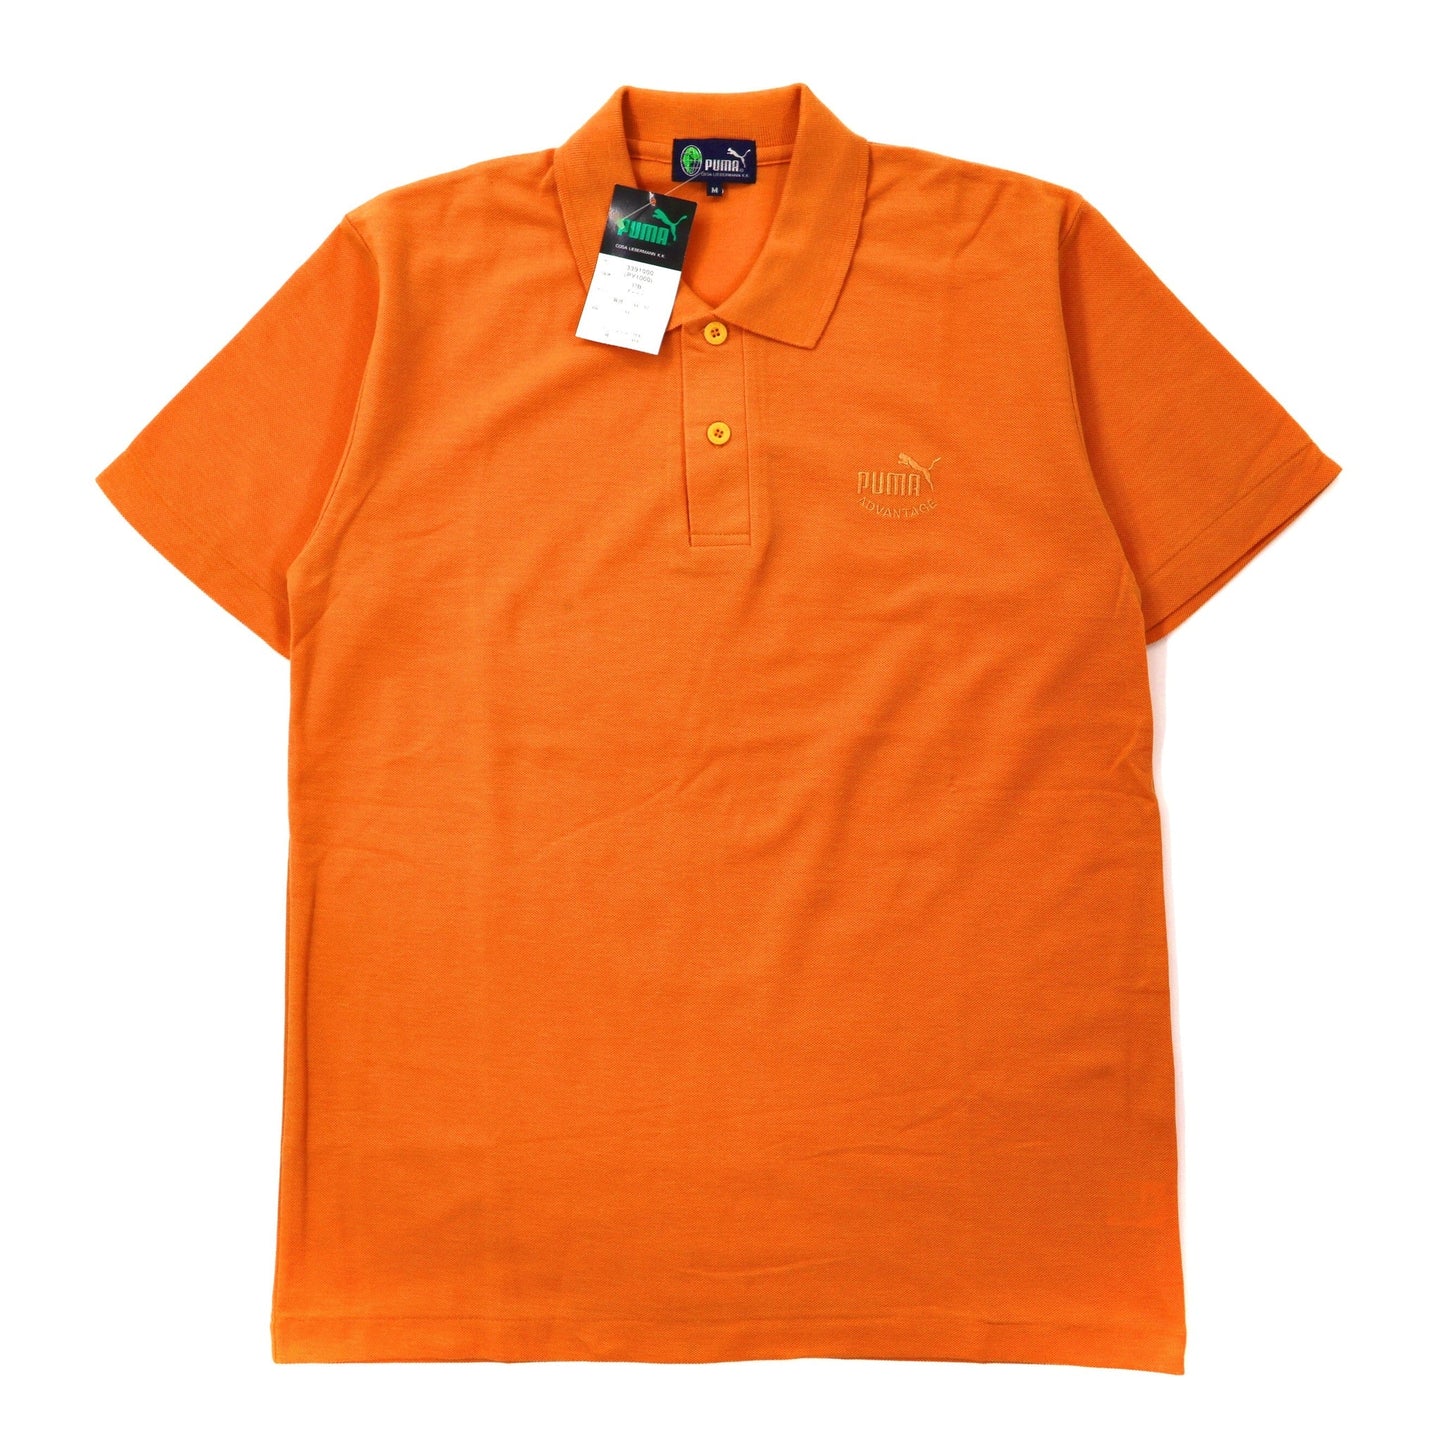 PUMA ポロシャツ M オレンジ コットン ロゴ刺繍 90年代 未使用品-PUMA-古着